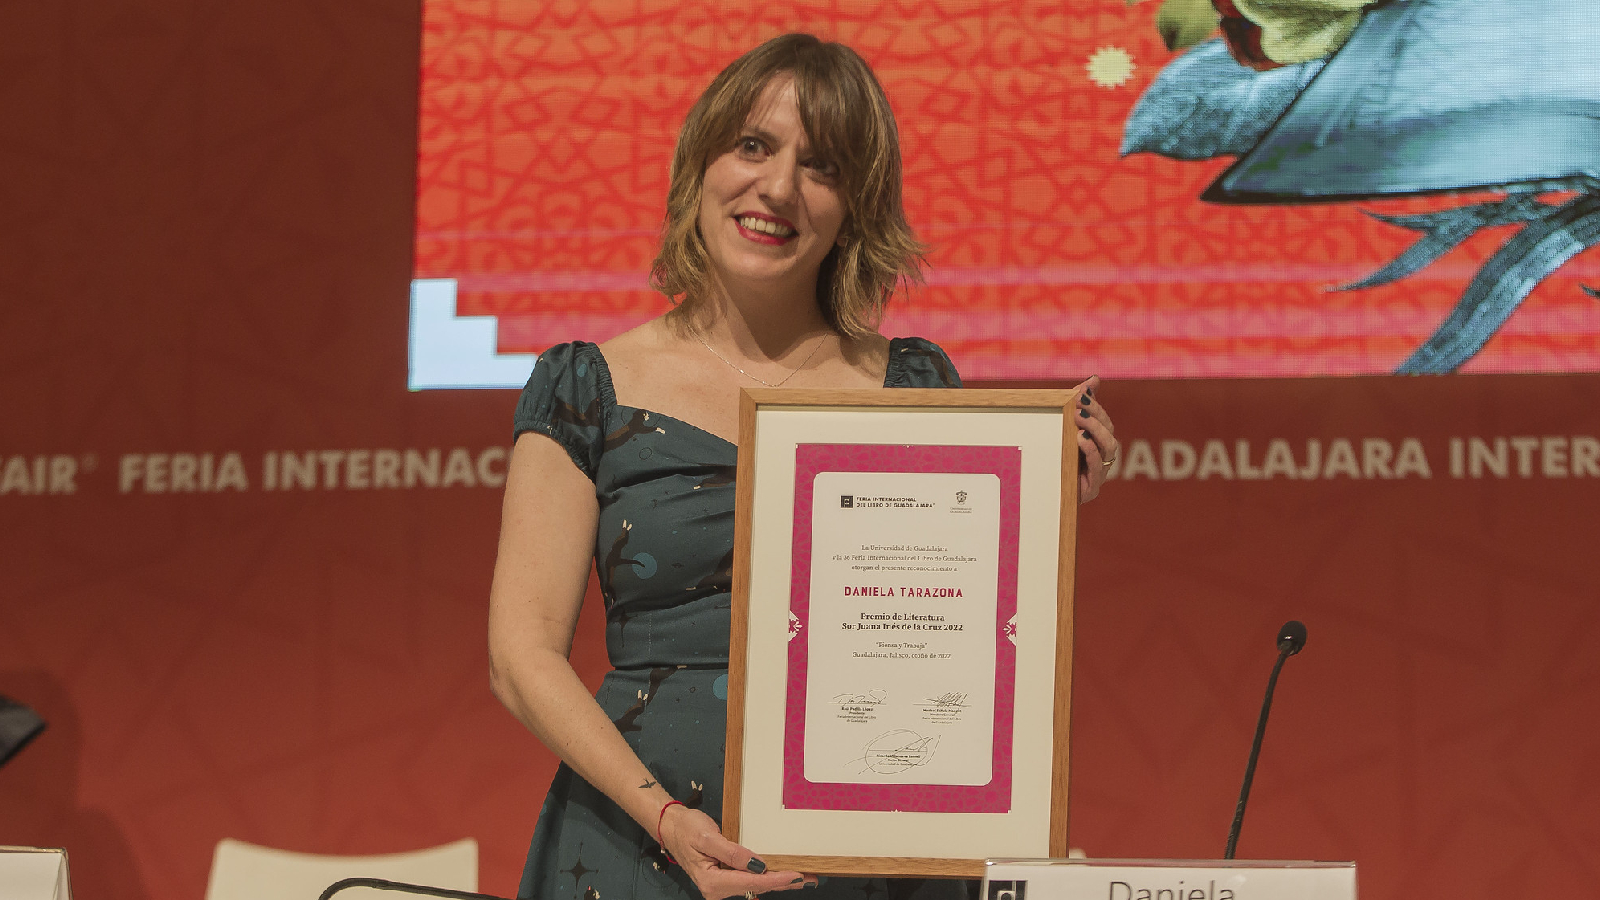 Daniela Tarazona recibió el Premio Sor Juana Inés de la Cruz en la FIL Guadalajara